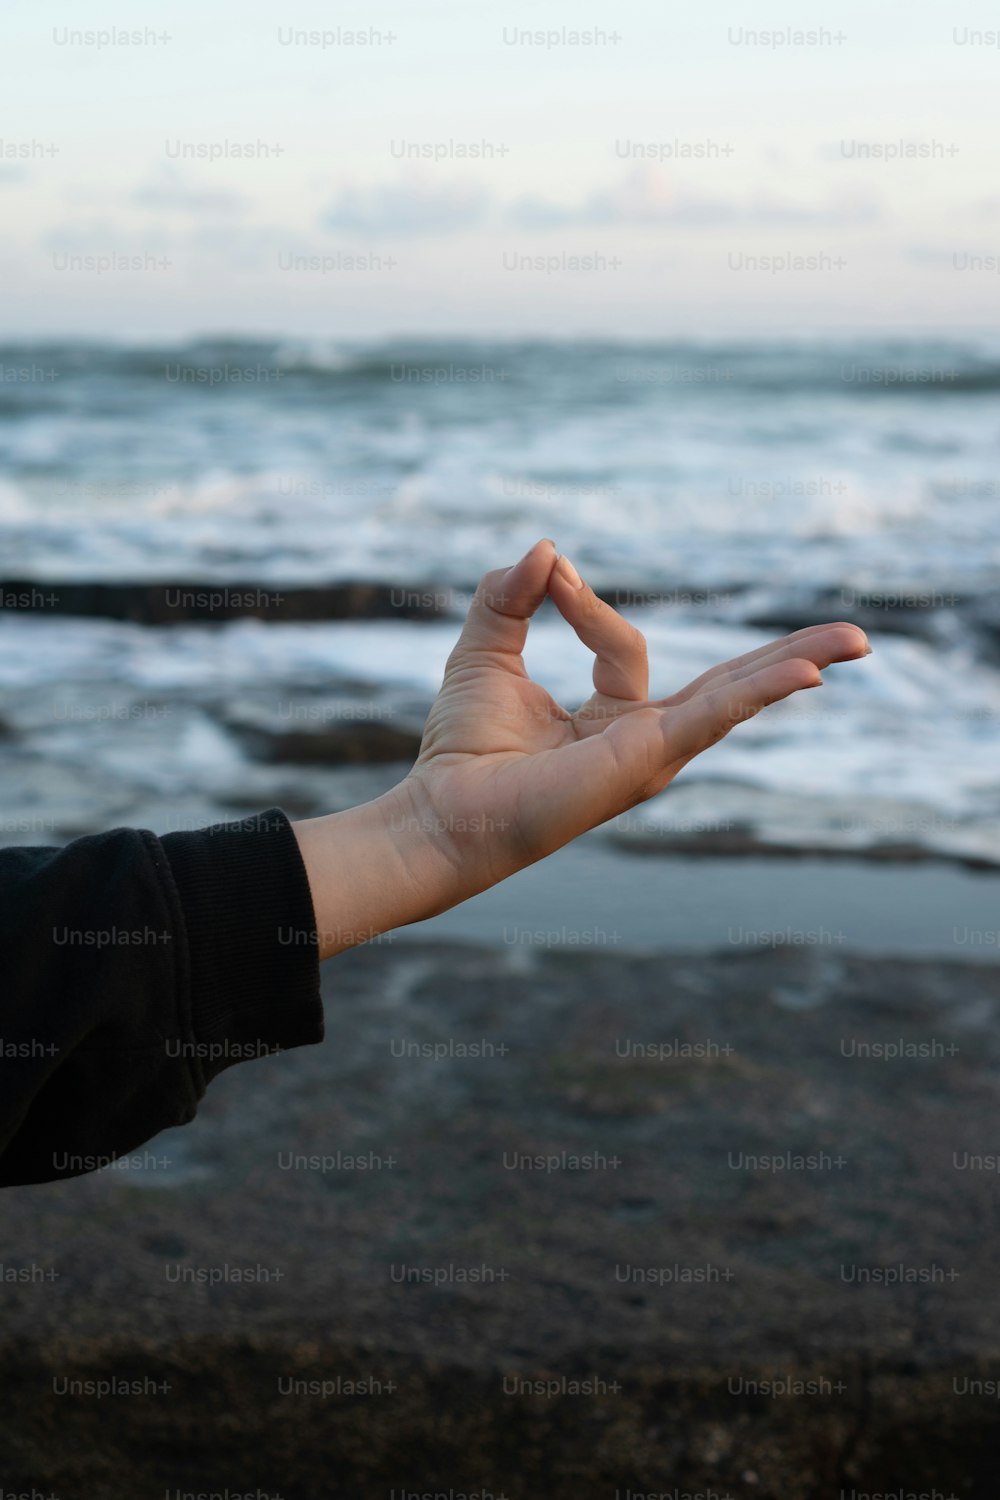 Una persona extendiendo su mano frente al océano